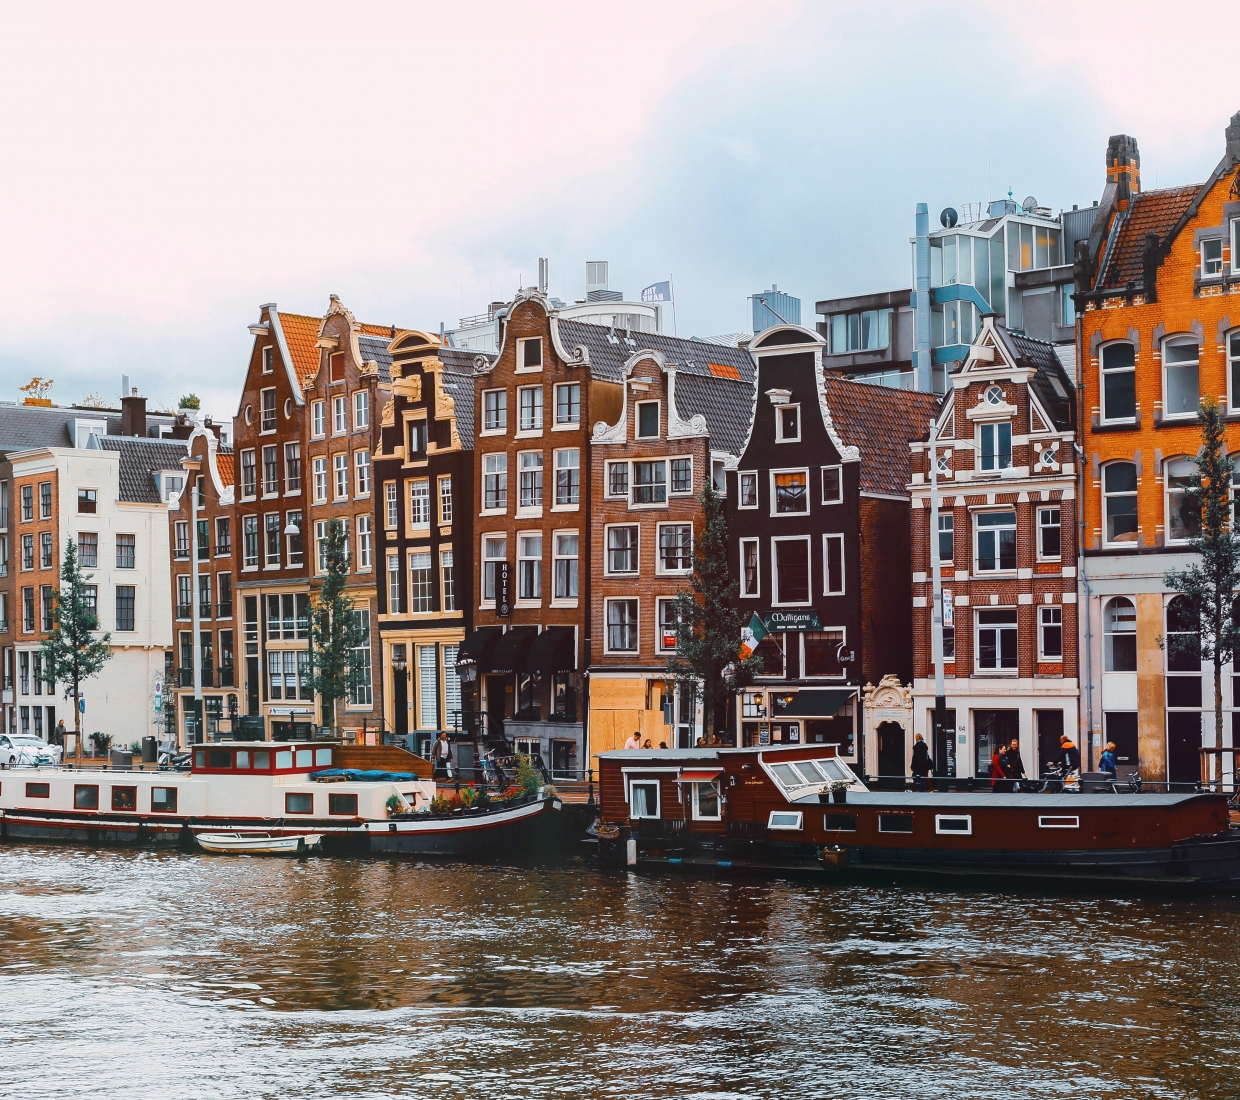 Die besten Bed & Breakfasts in Amsterdam, Amsterdamantischer Hotels und Ferienwohnungen in Amsterdam